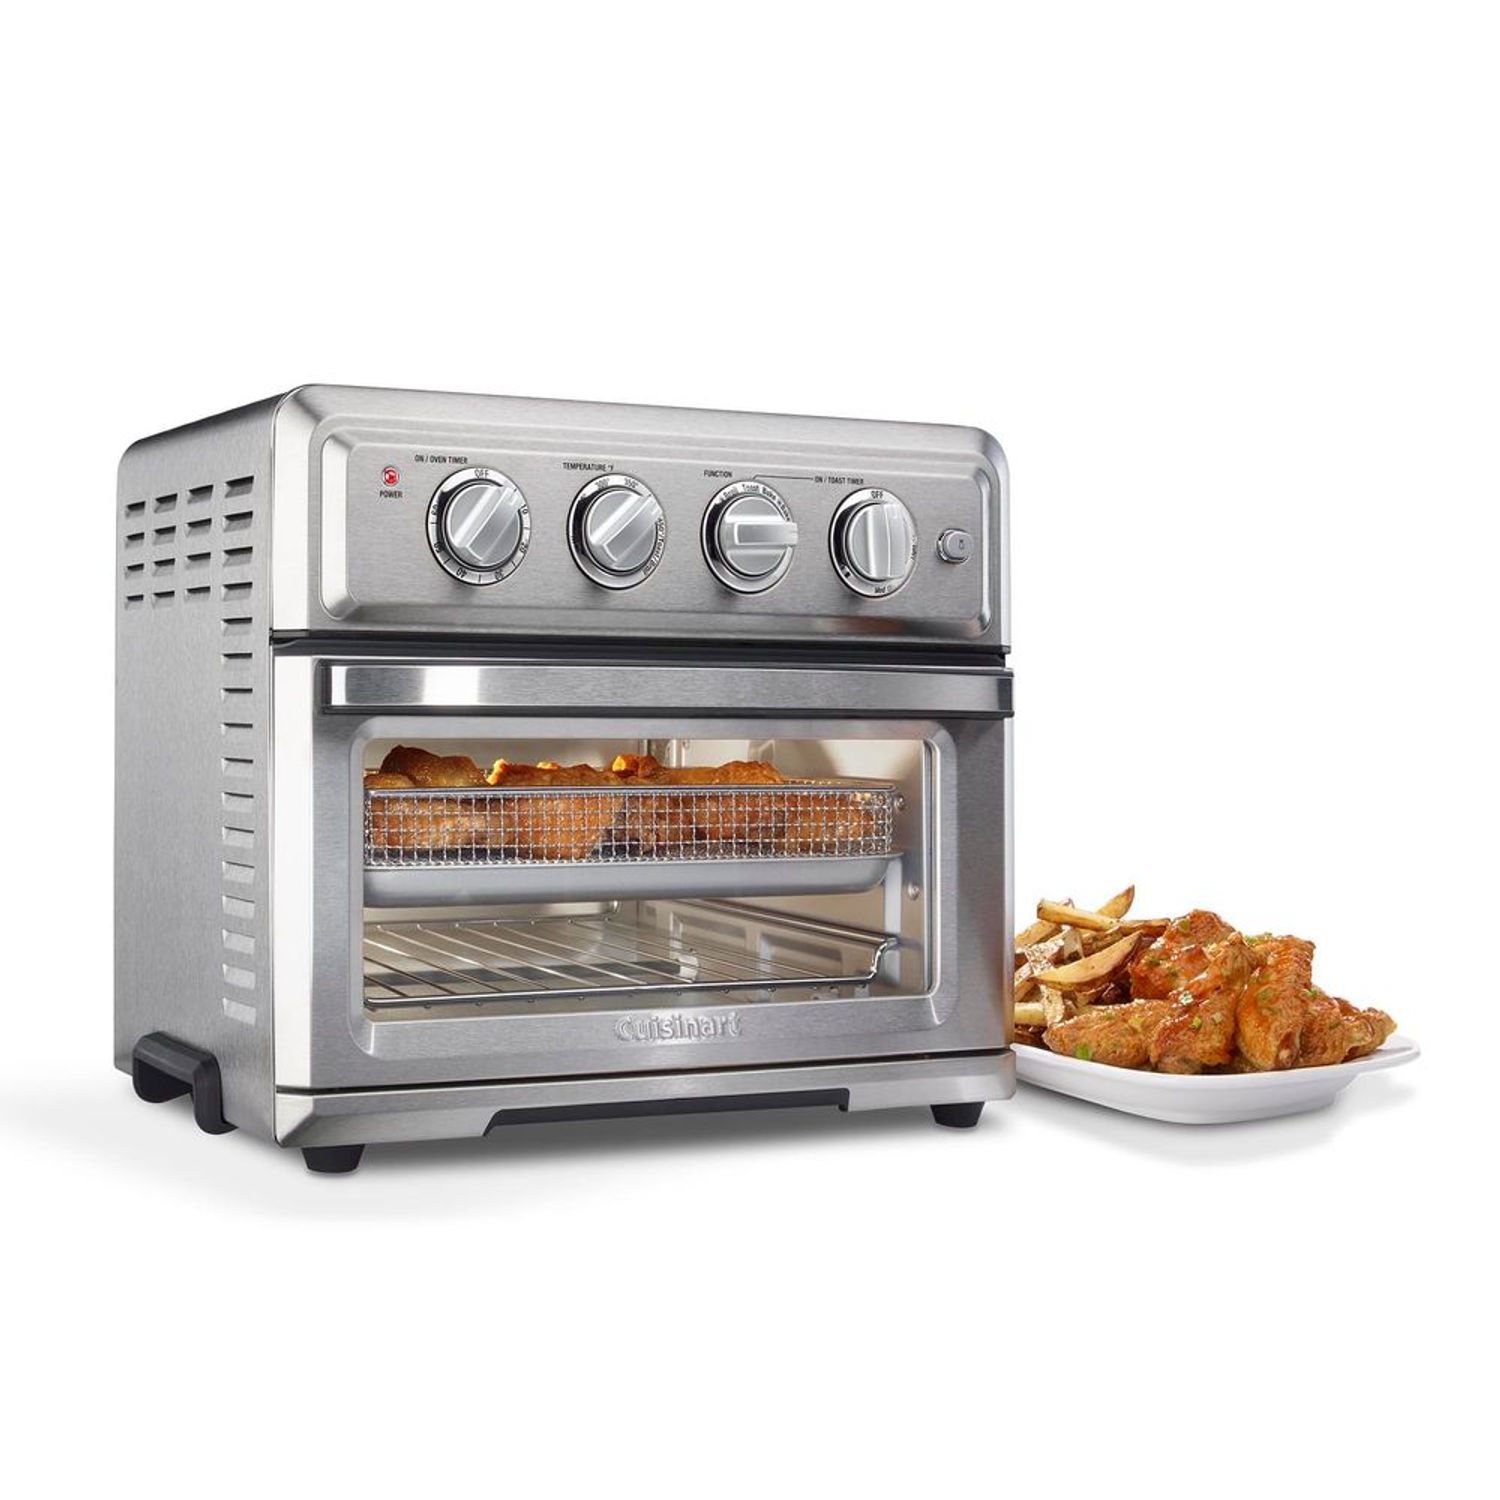 La Hora de las Compras - Producto - Horno Power Air Fryer Oven